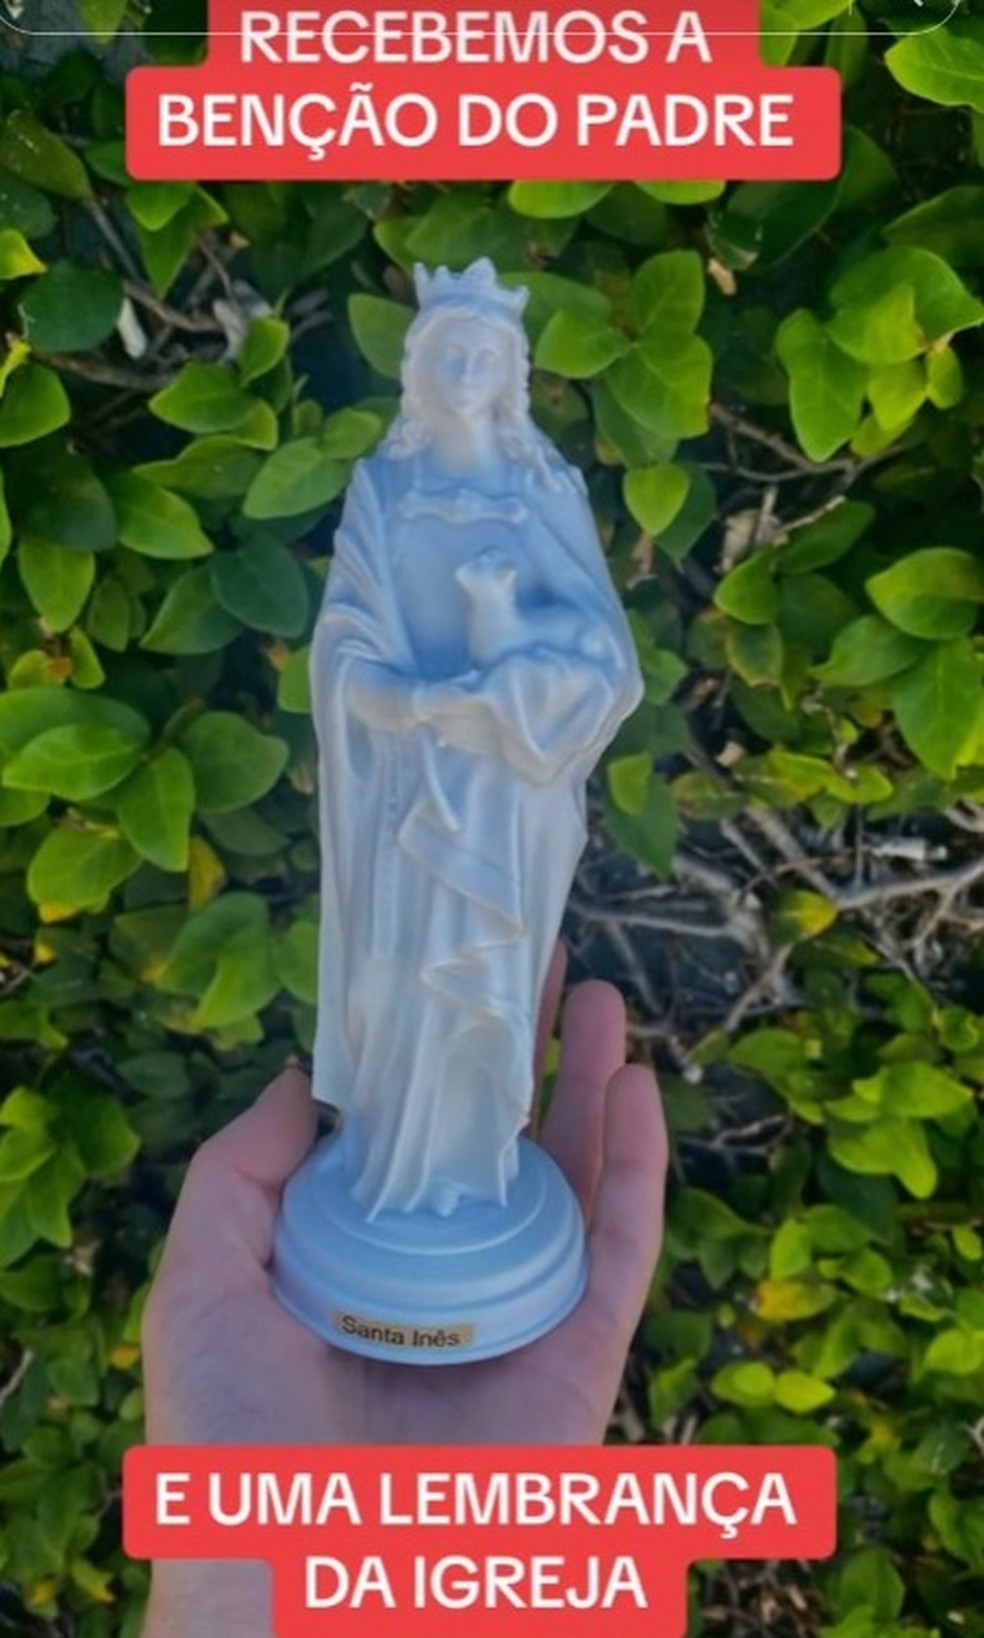 Casal recebeu a imagem de uma santa como lembrança da igreja — Foto: Redes sociais/ Reprodução